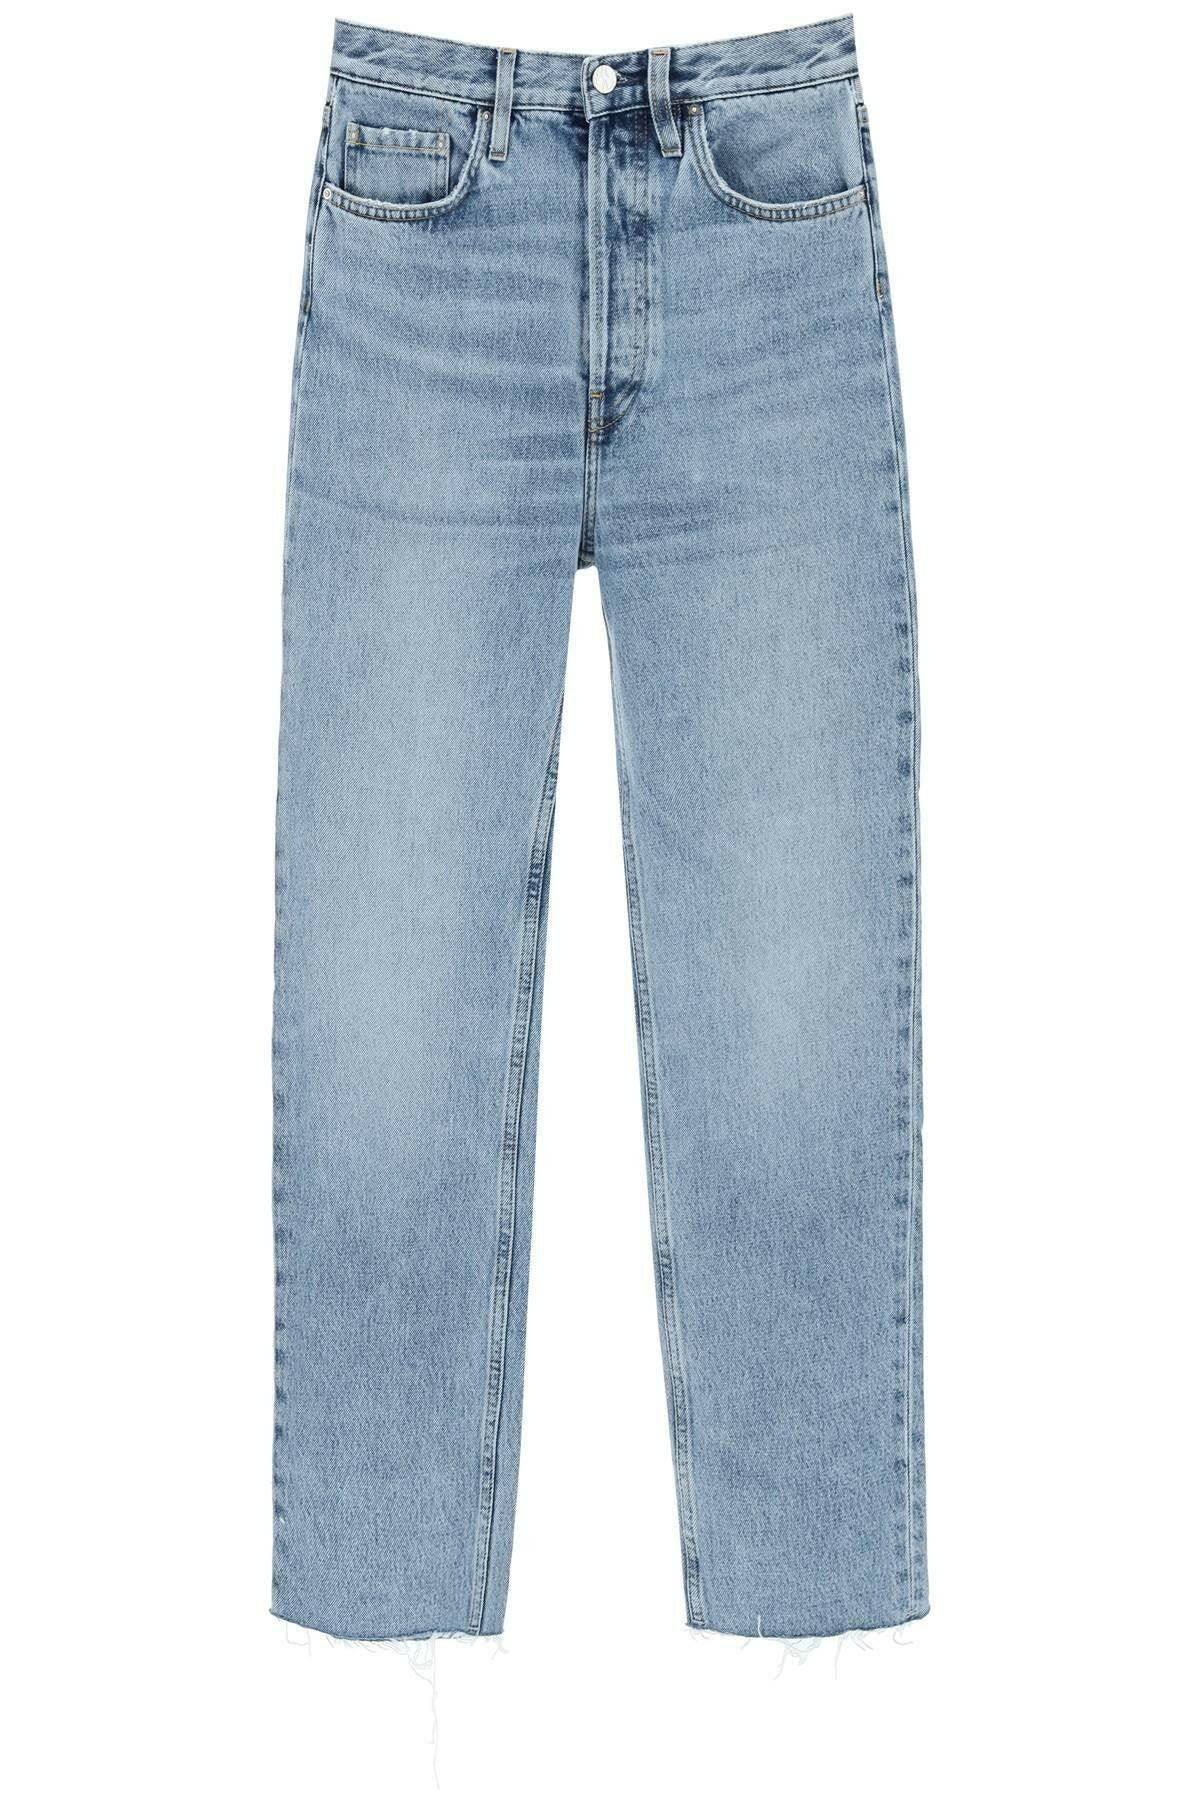 Toteme Classic Cut Jeans In Organic Cotton - JOHN JULIA